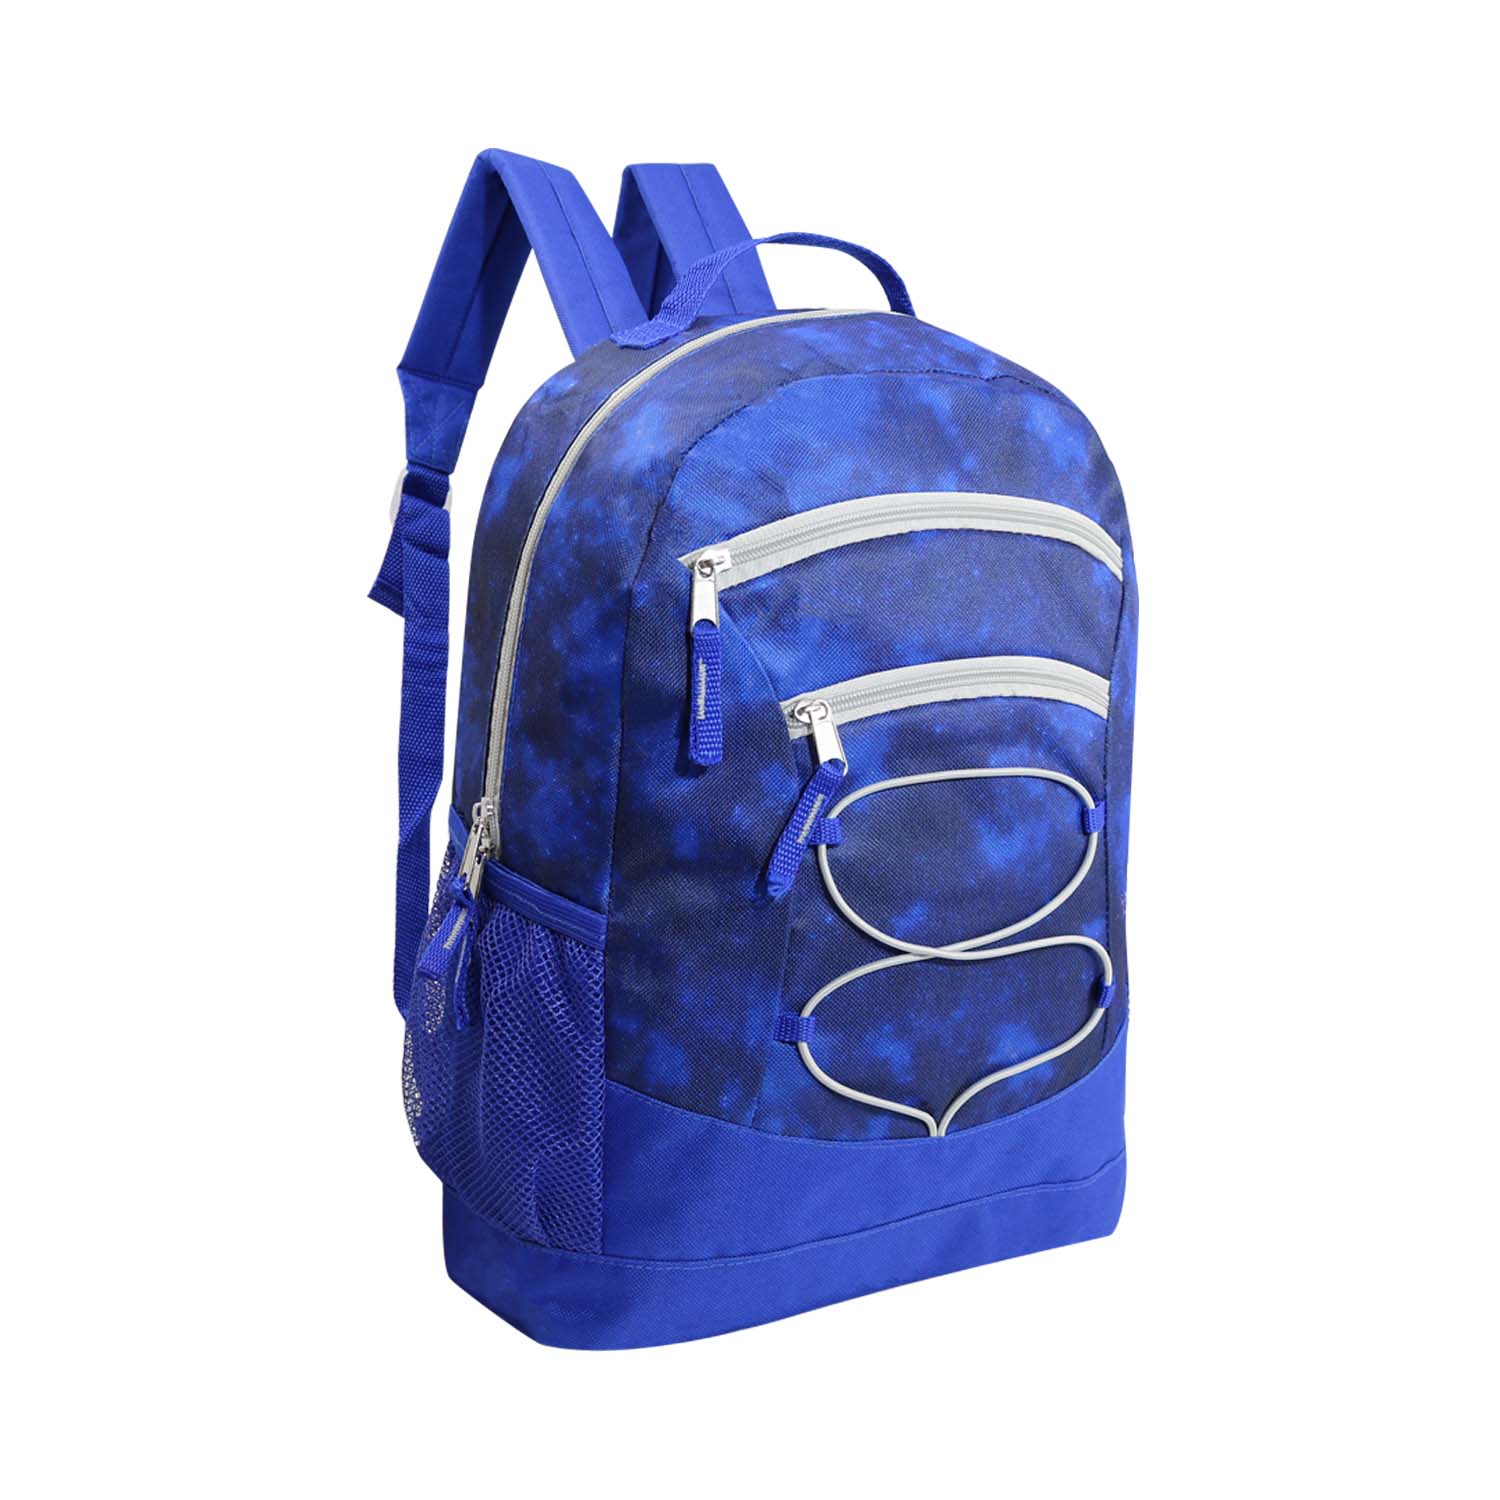 17" Bungee Wholesale Backpack In 8 Prints - Bulk Case Of 24 Backpacks